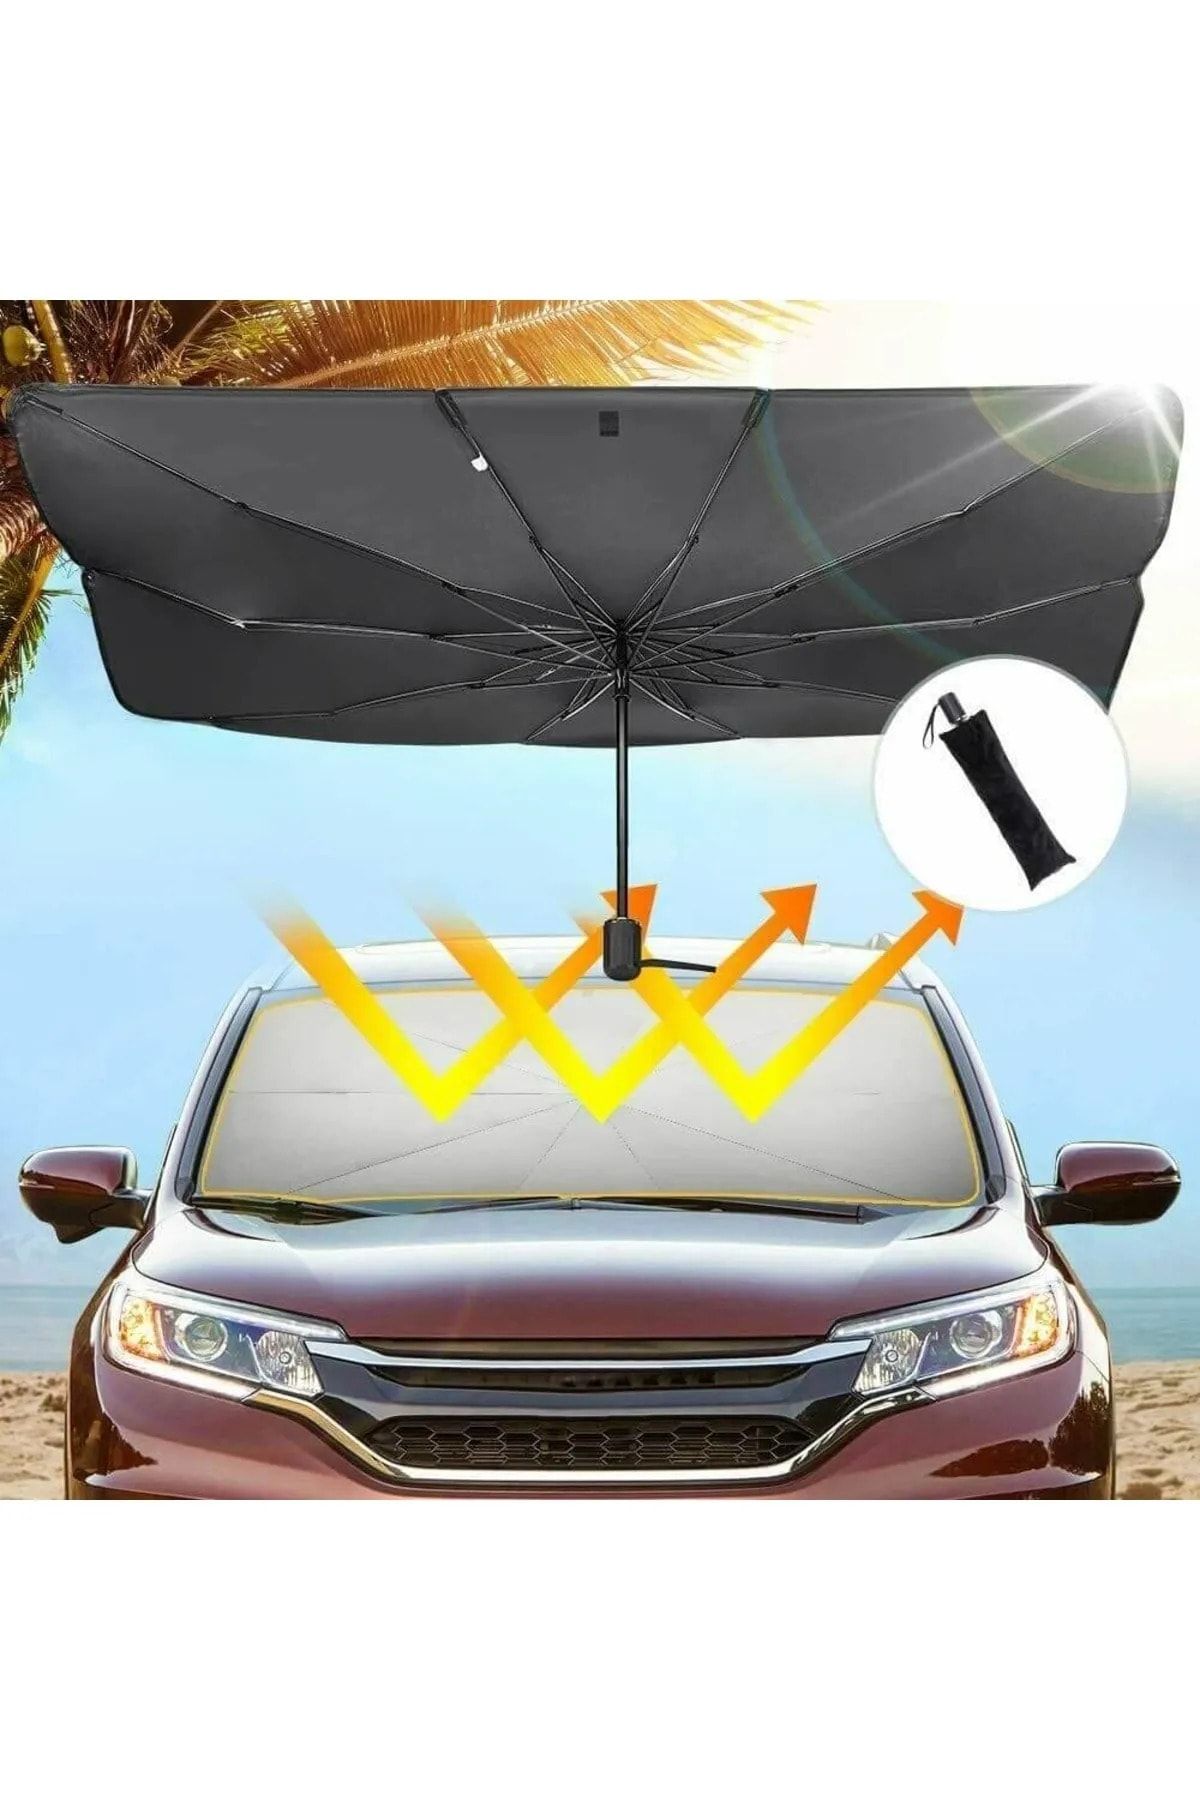 Universal Isuzu Wfr Araba Ön Cam Güneşlik Katlanabilir Güneşlik Şemsiye Ön Cam Gölgelik